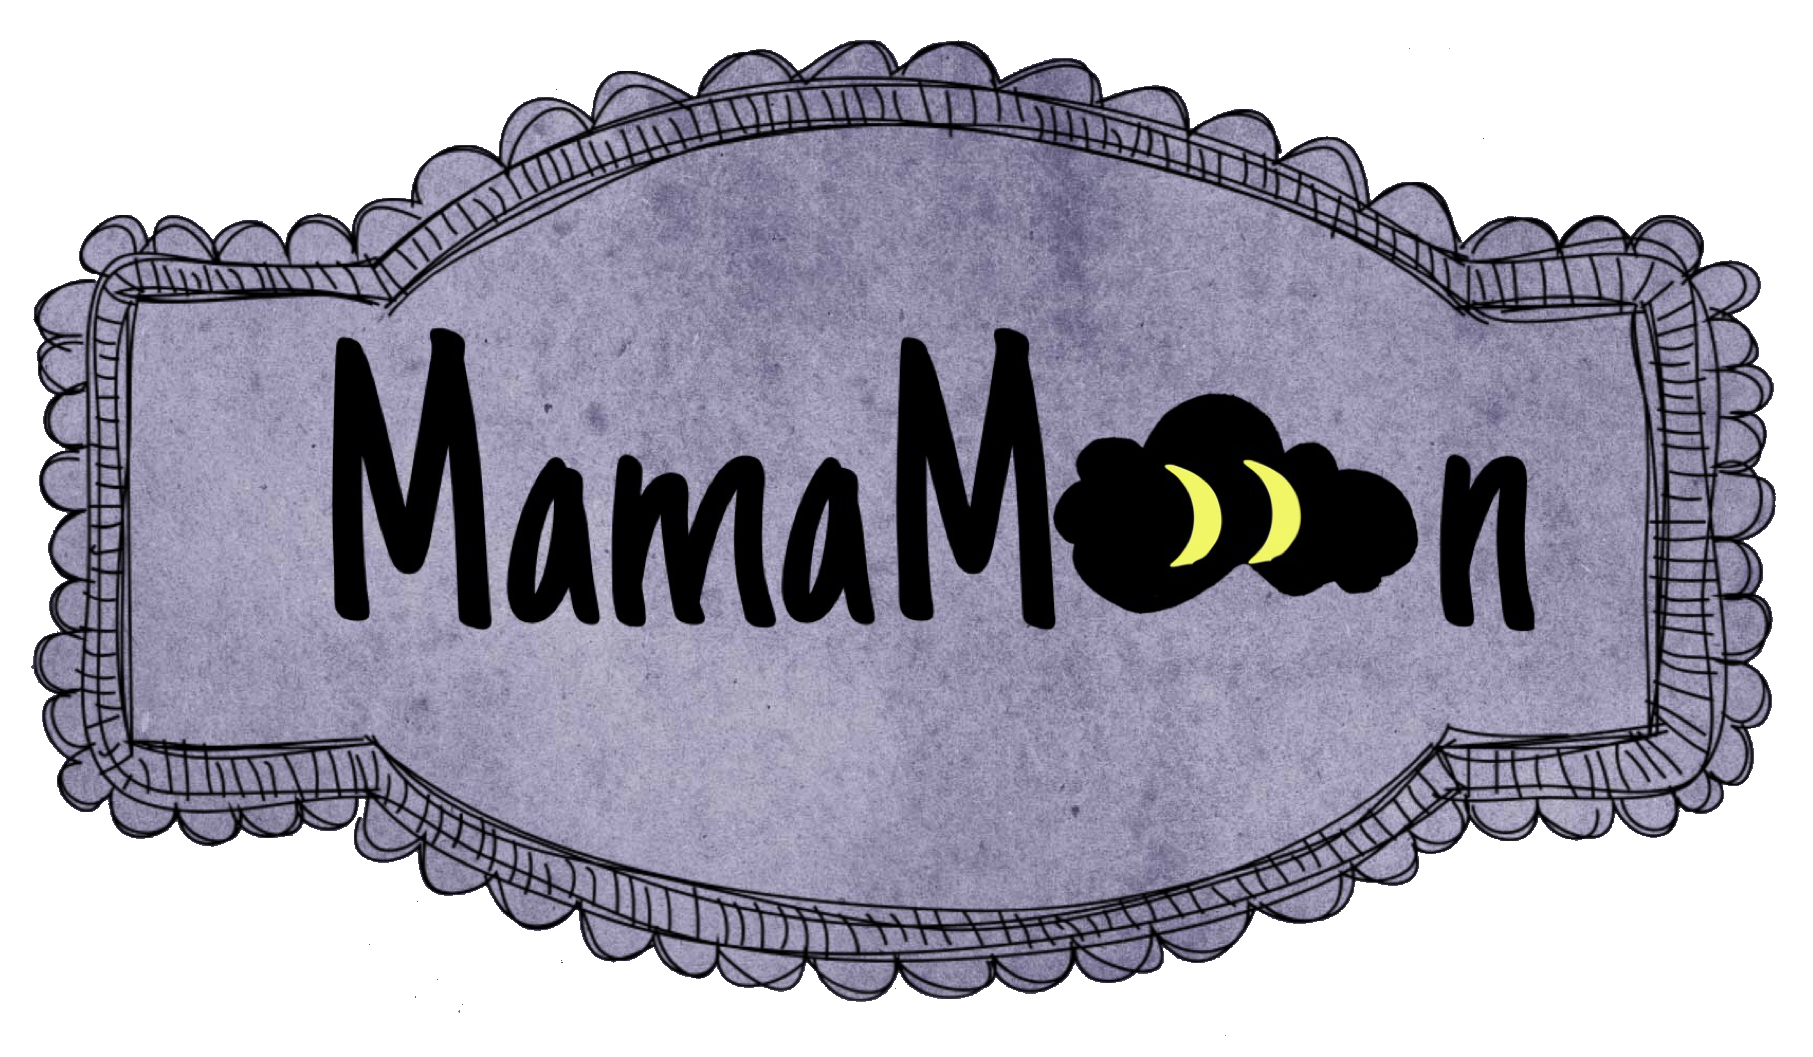 mamamoon logo